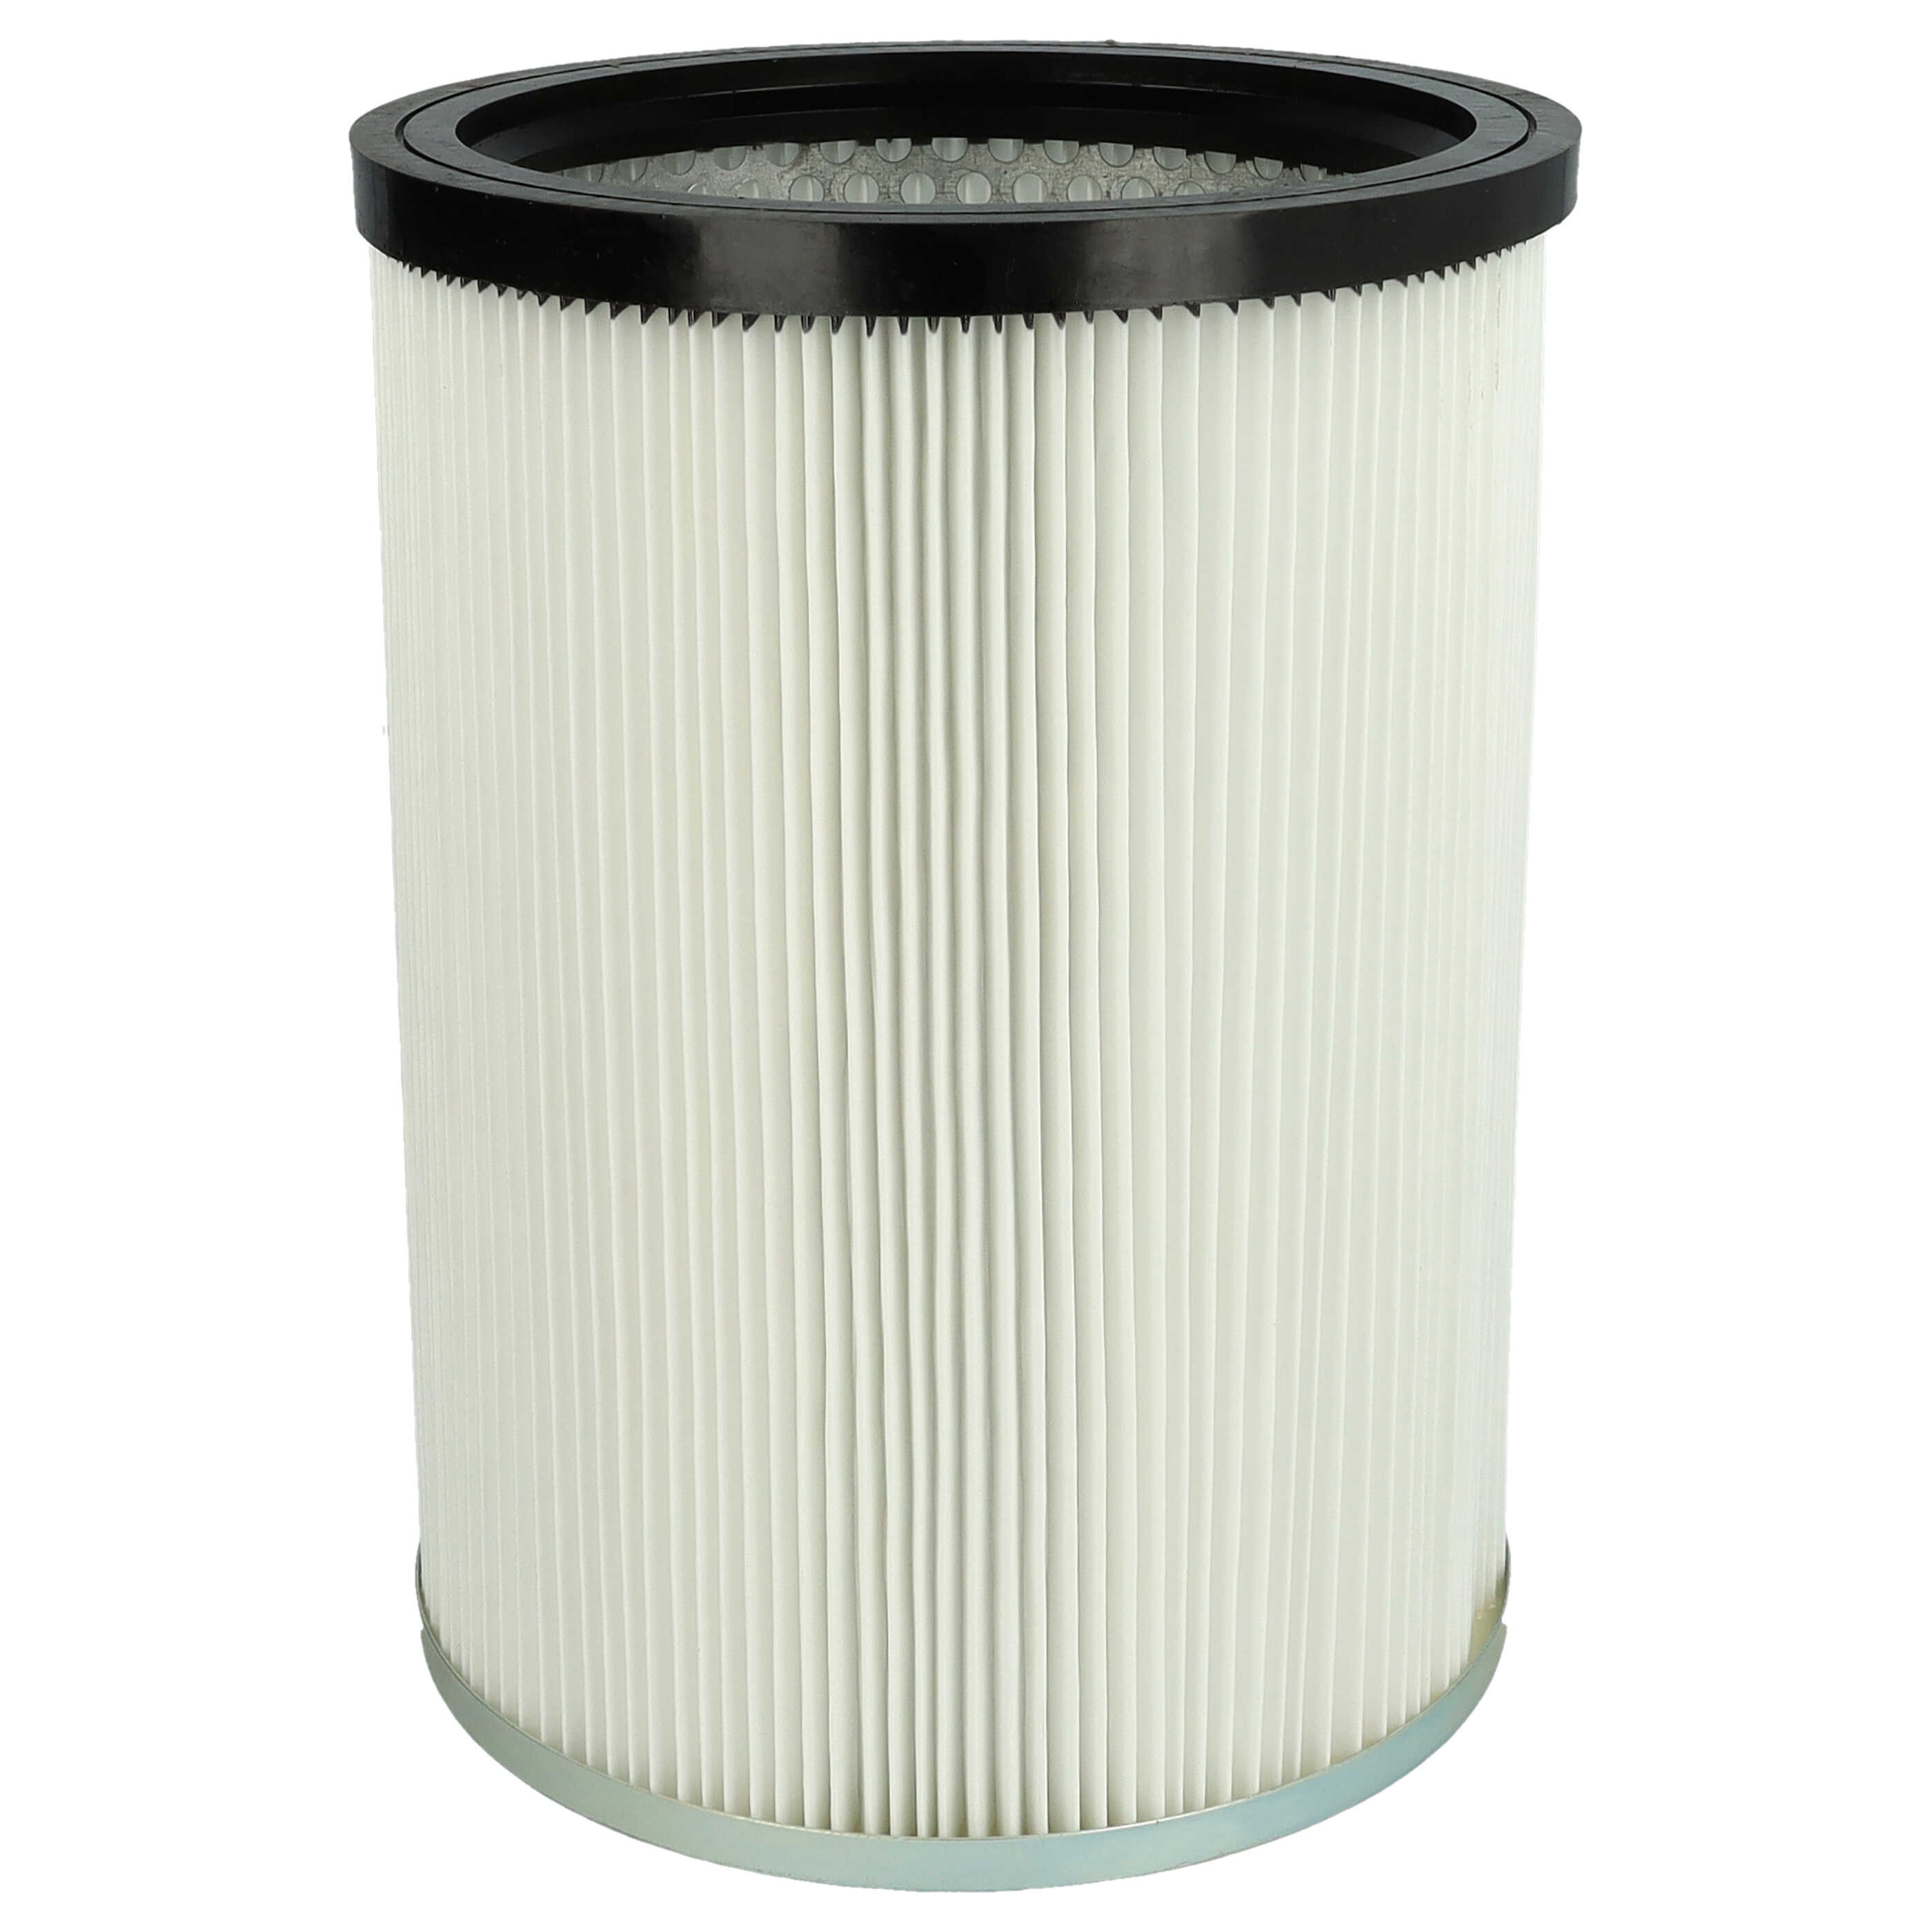 Filtro reemplaza Kärcher 9.770-988.0, 6.907-038.0 para aspiradora - filtro de cartucho, blanco